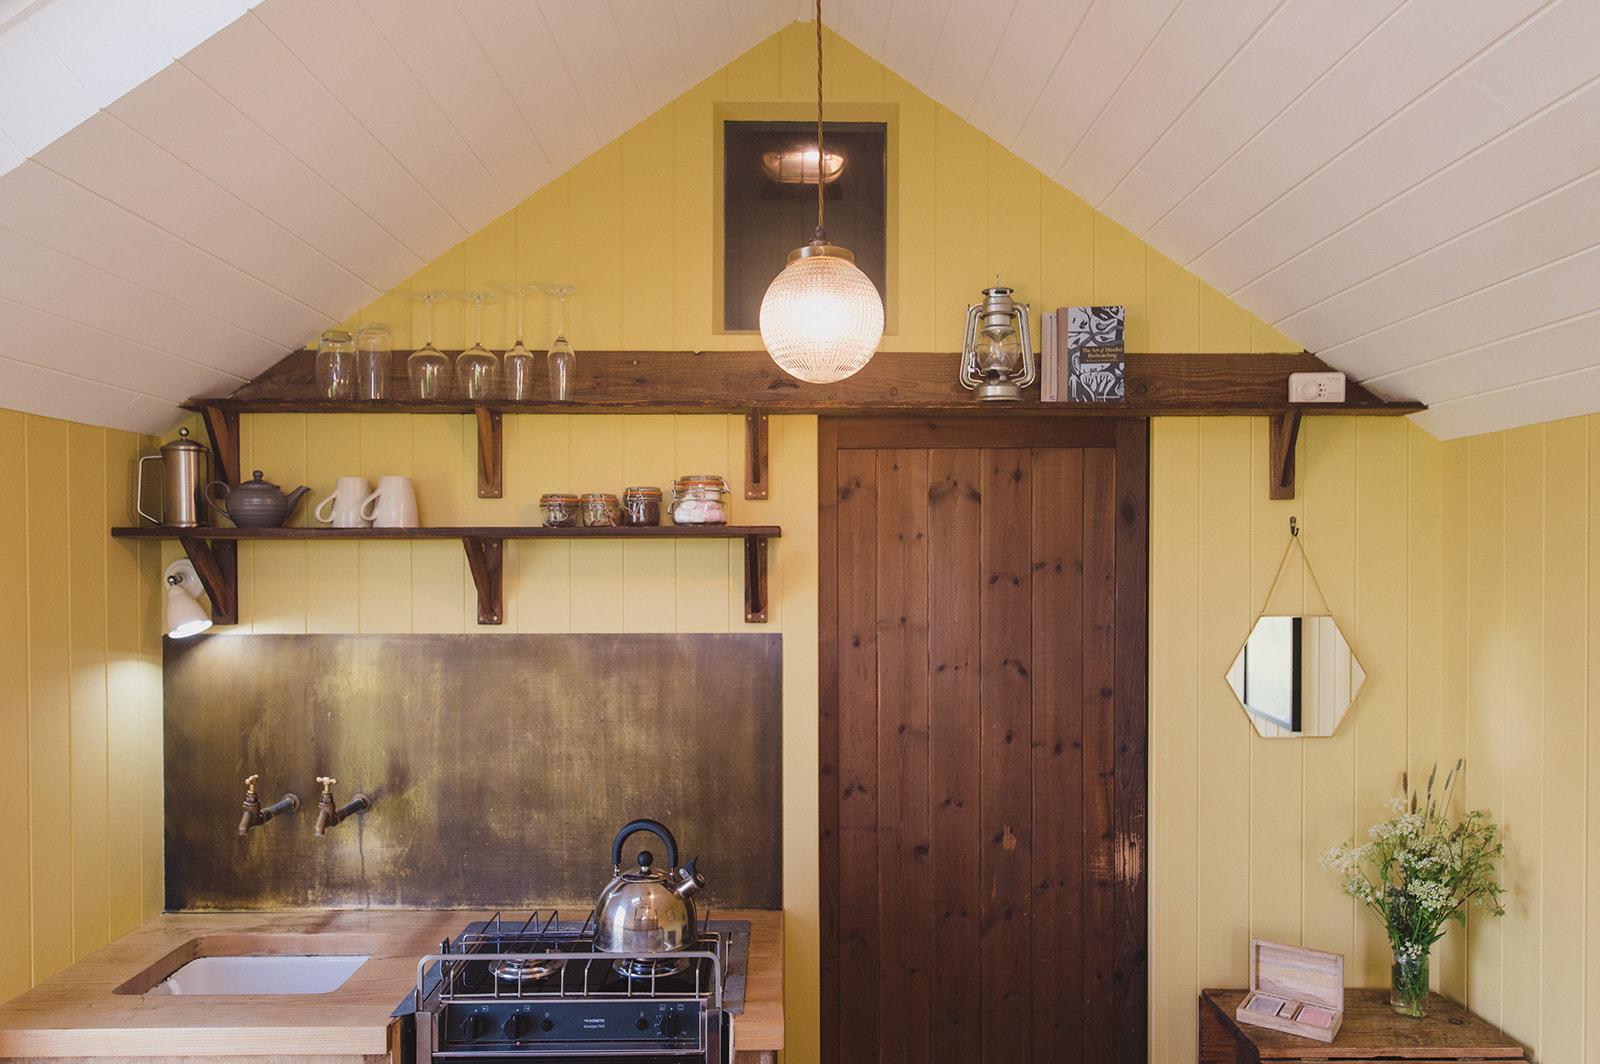 ferryman's hut kitchen